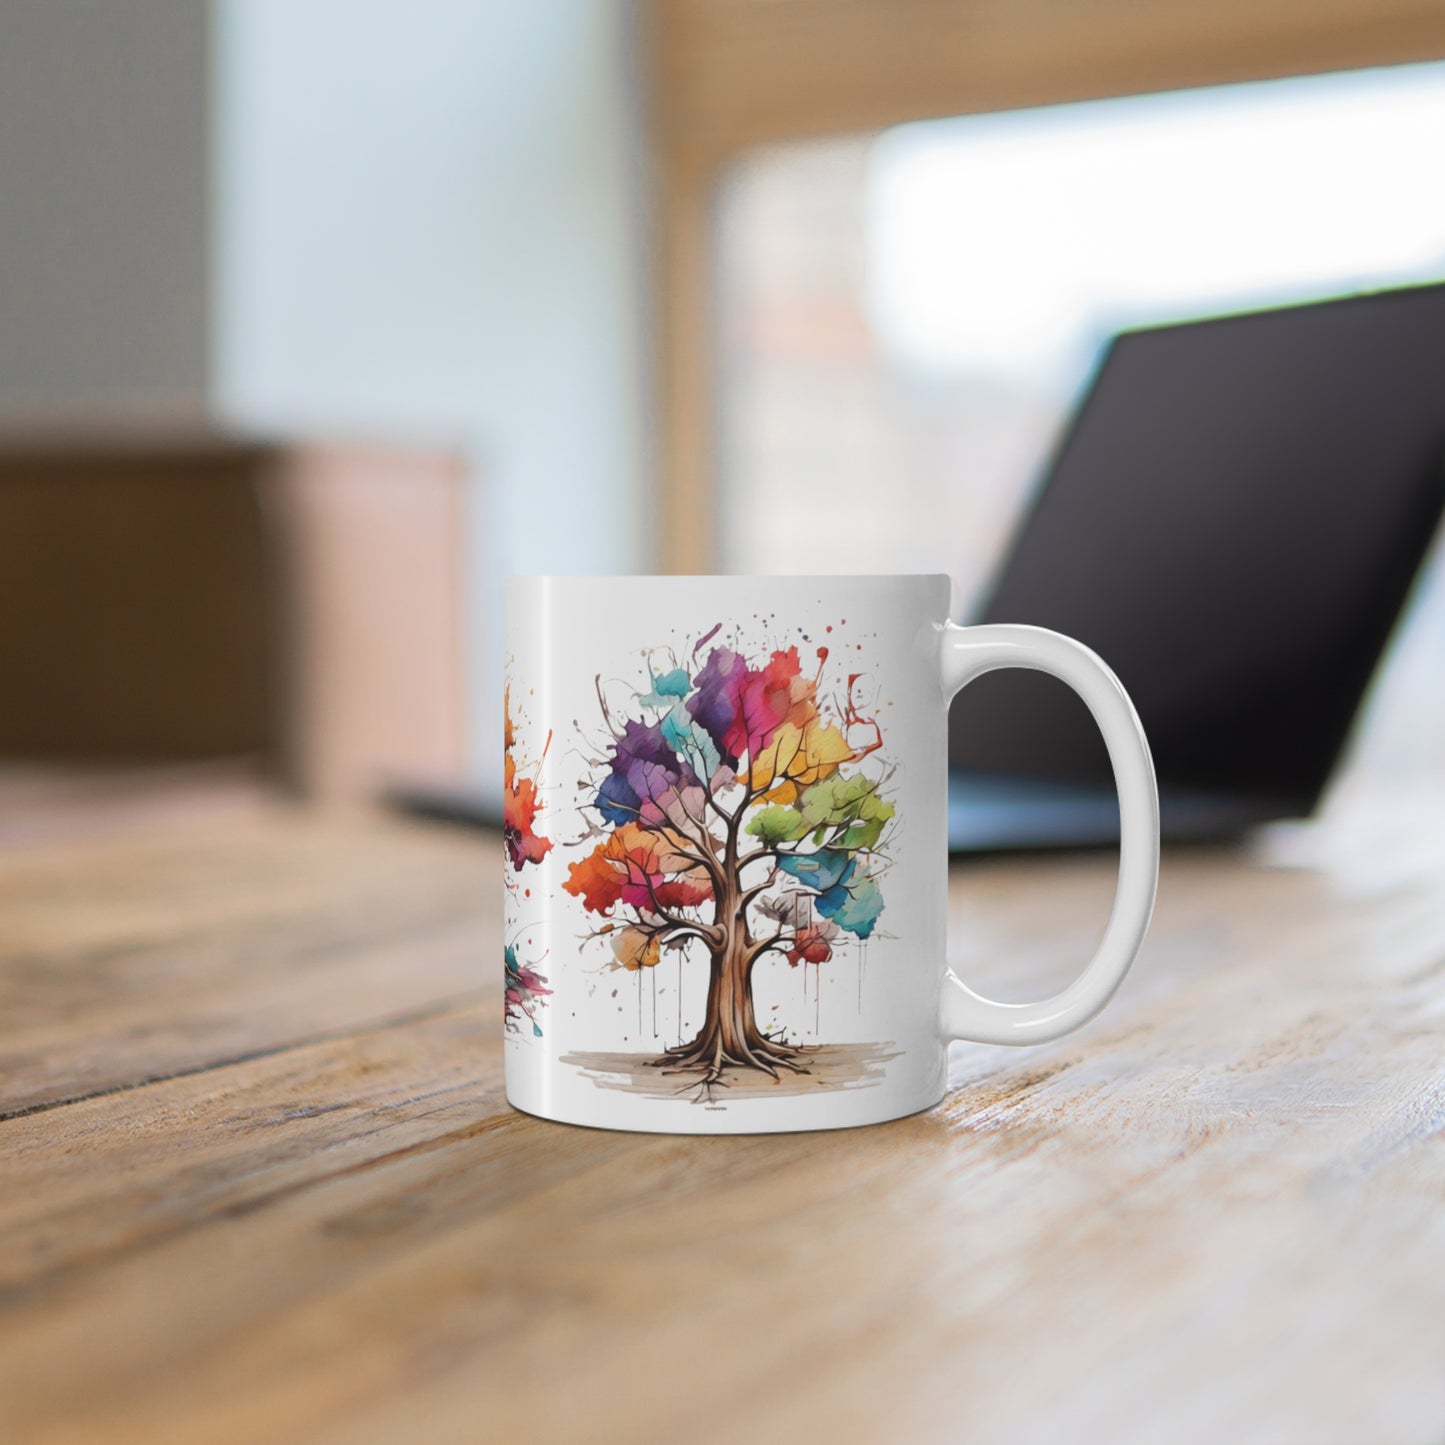 Messy Colourful Trees Mug - Ceramic Coffee Mug 11oz